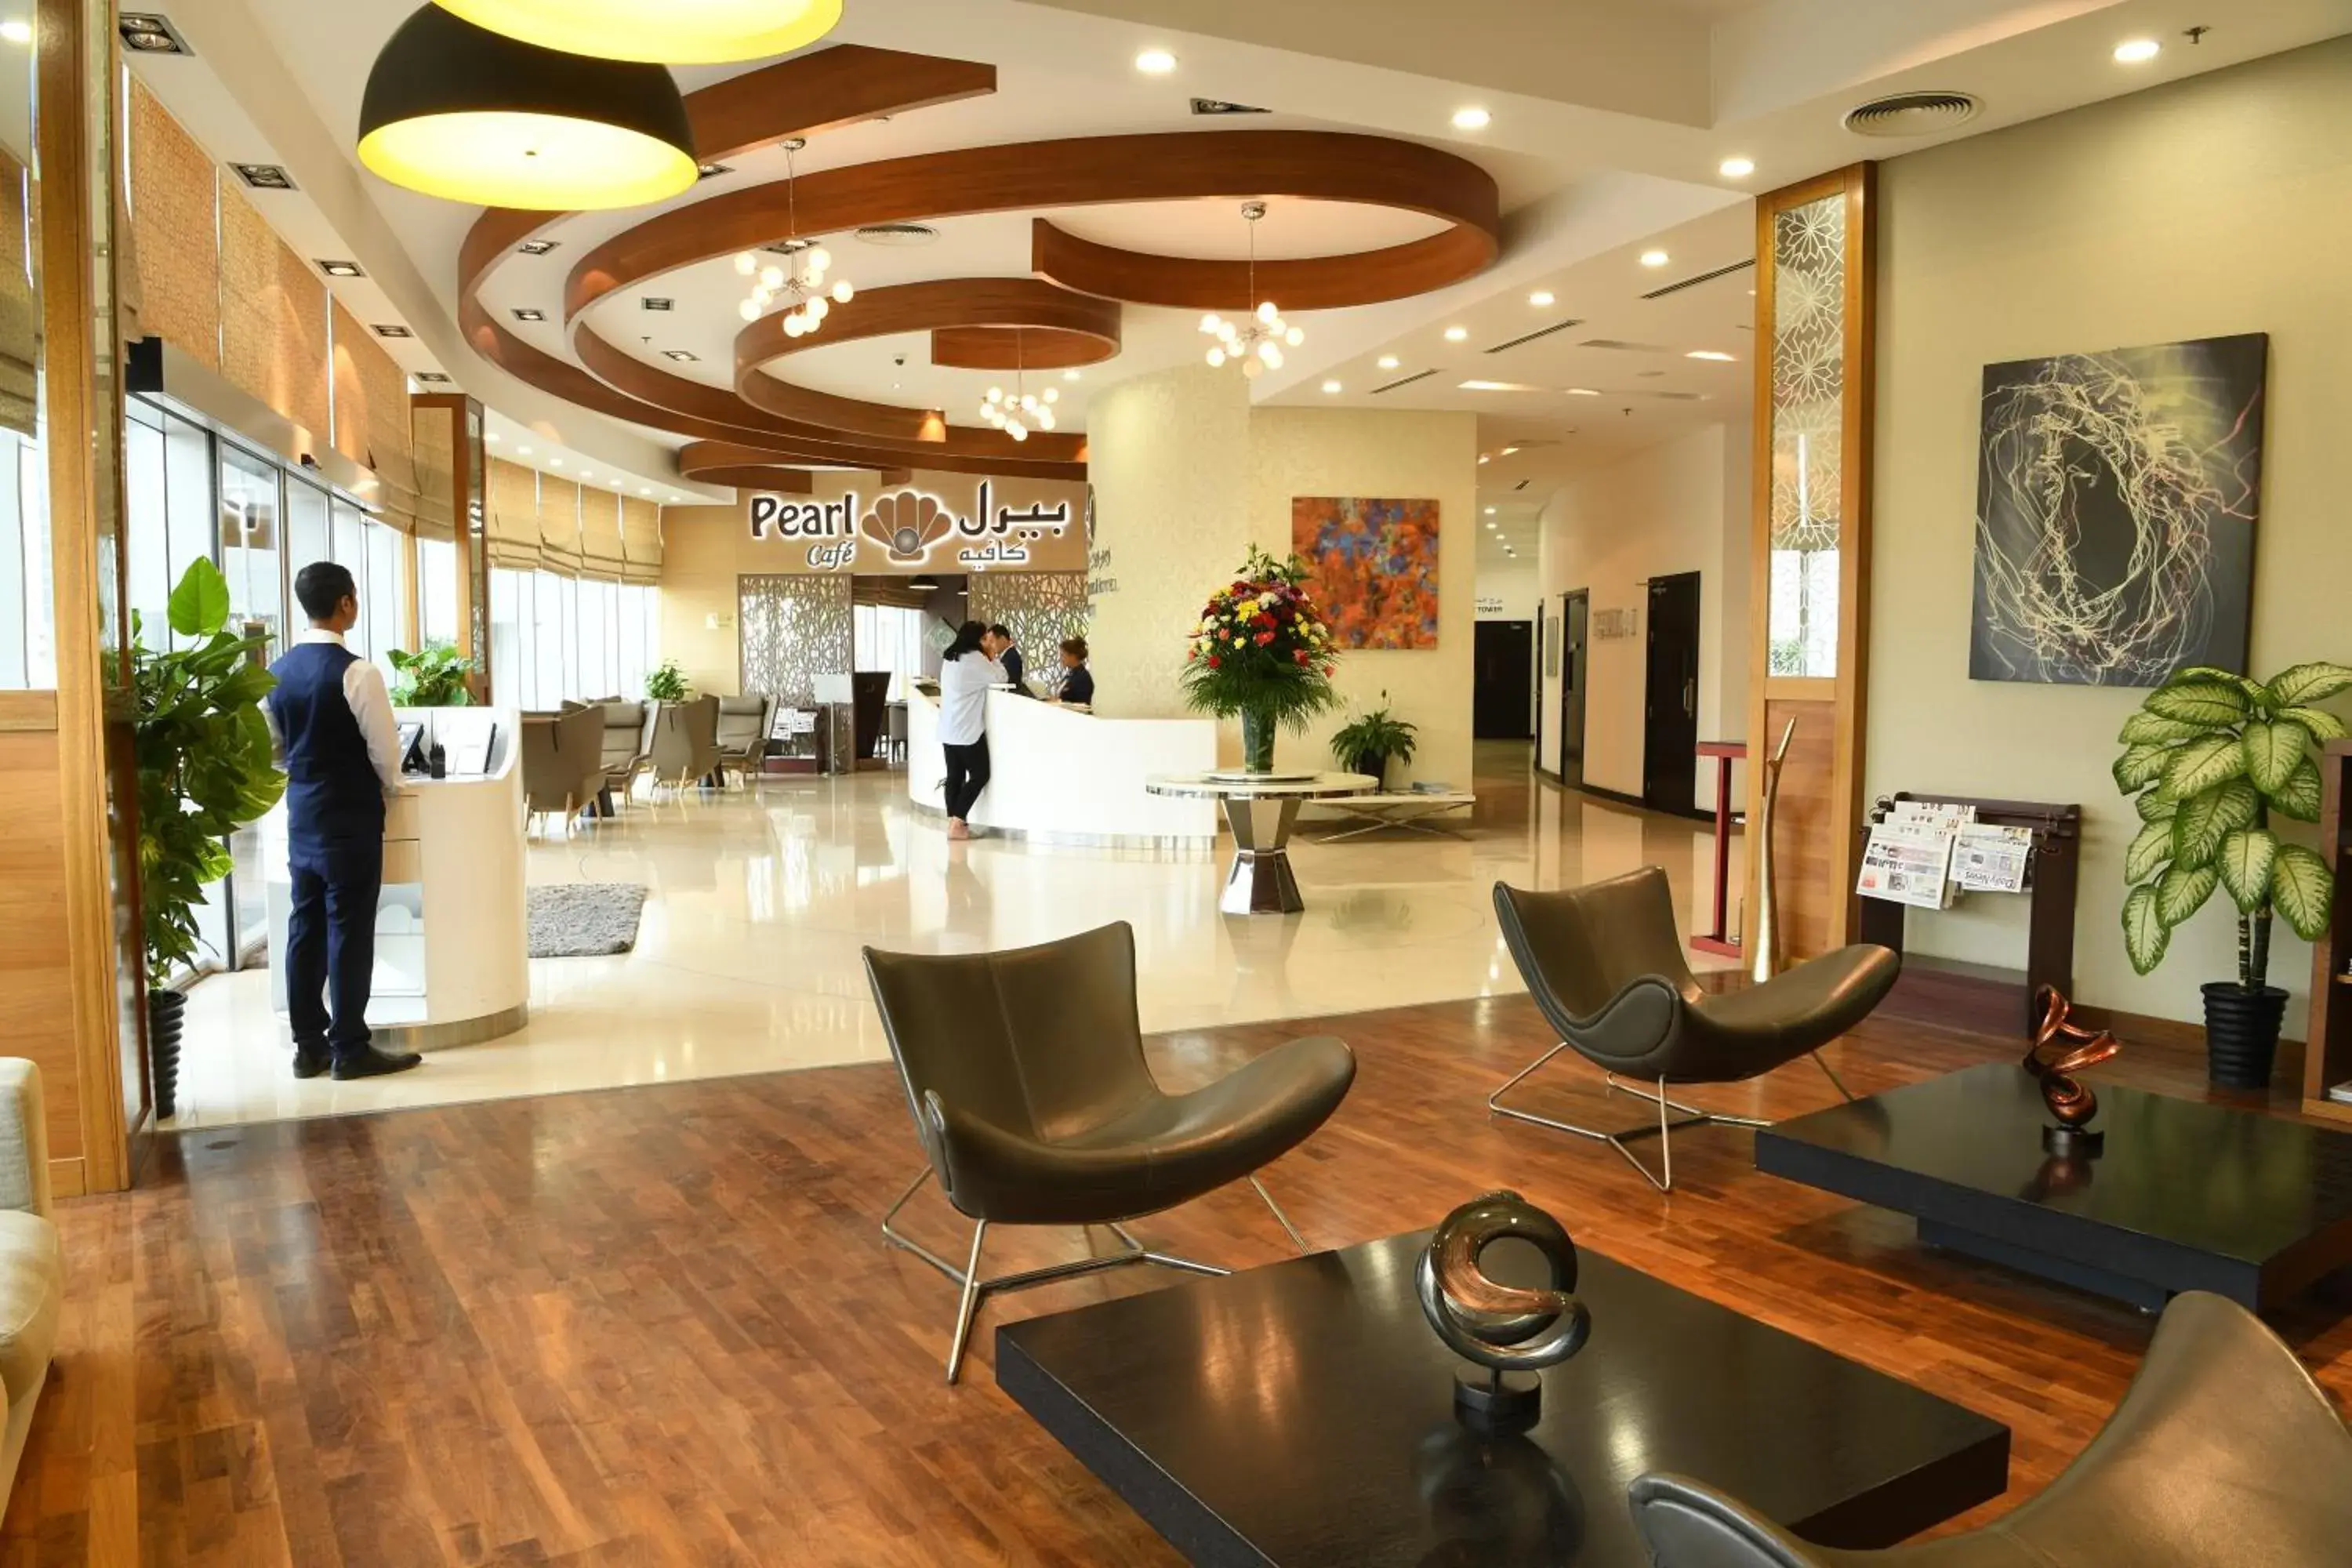 Lobby or reception, Lobby/Reception in Gulf Suites Hotel Amwaj